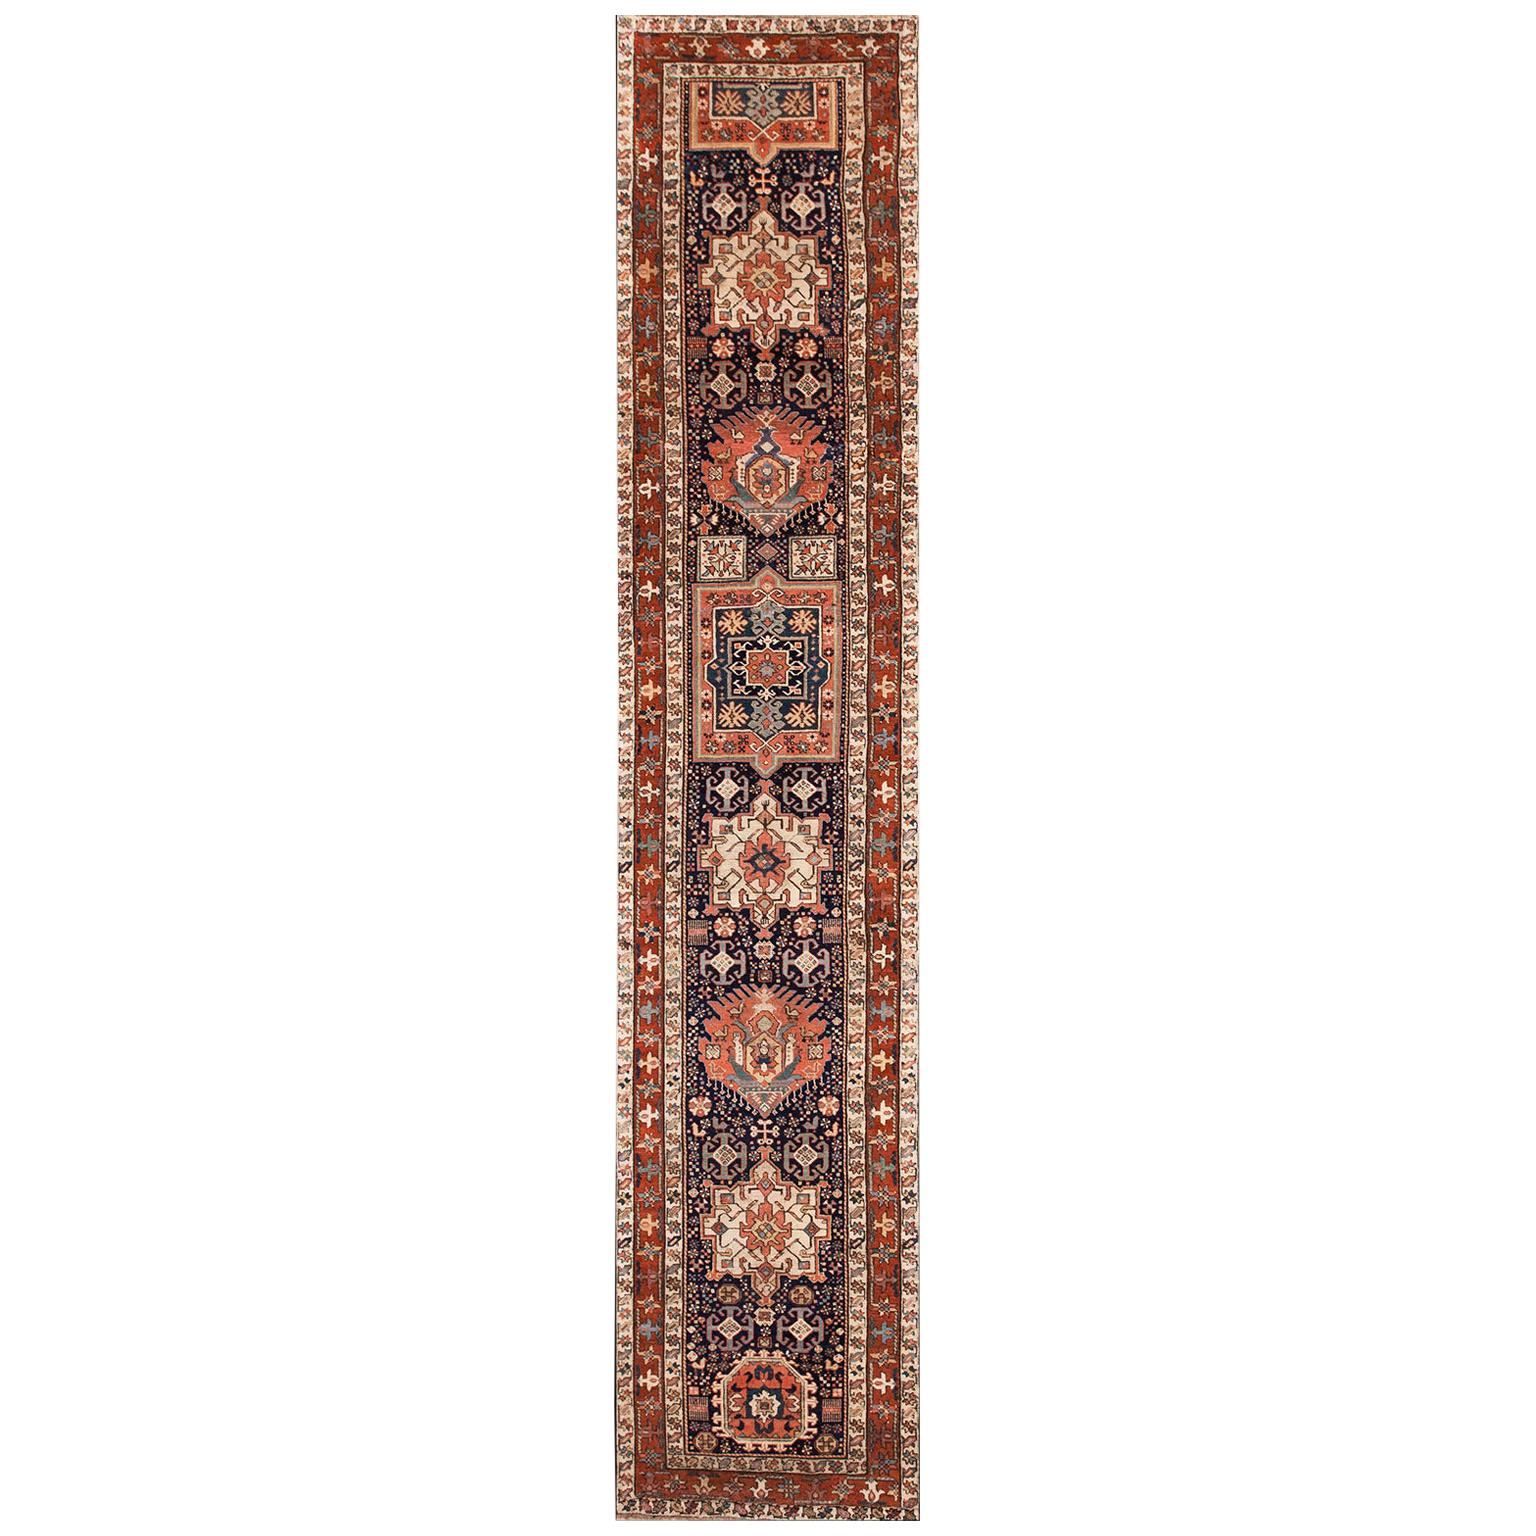 19th Century N.W. Persian Shahsavan Carpet ( 3' x 16' - 90 x 488 )